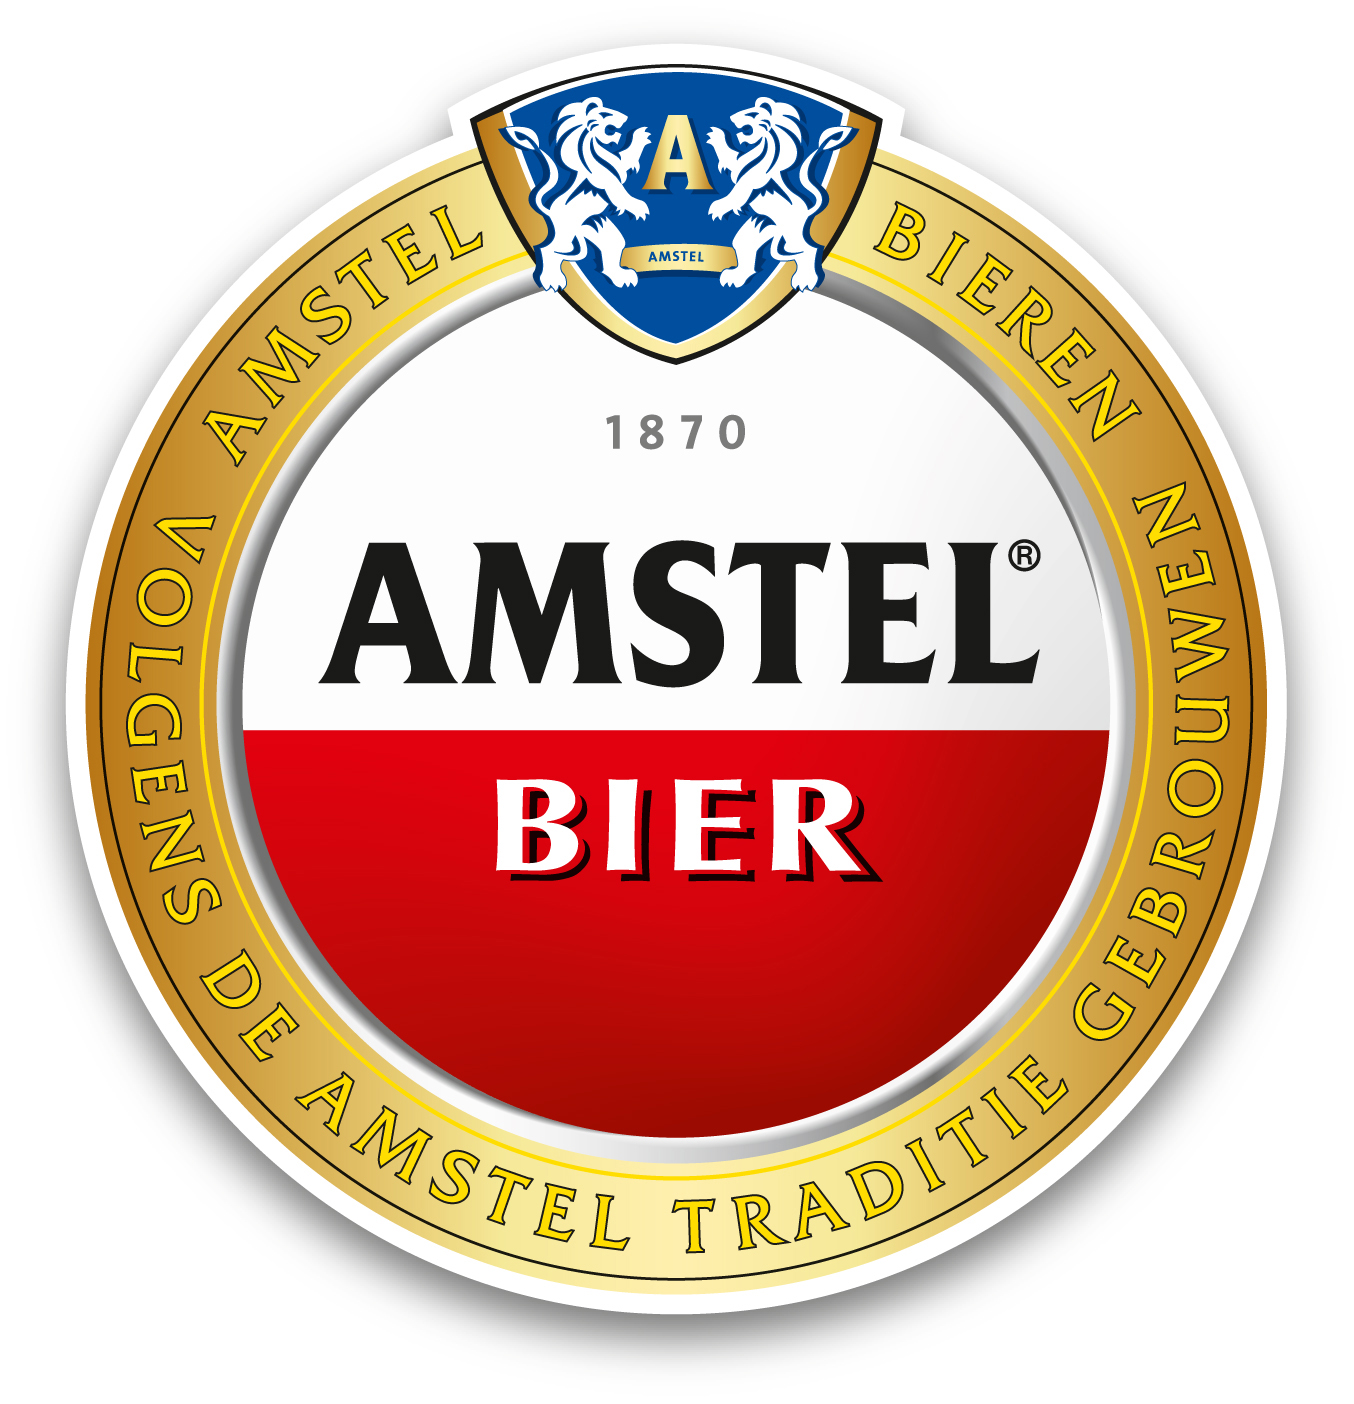 69803 Amstel bier fust all-in-one 20 liter